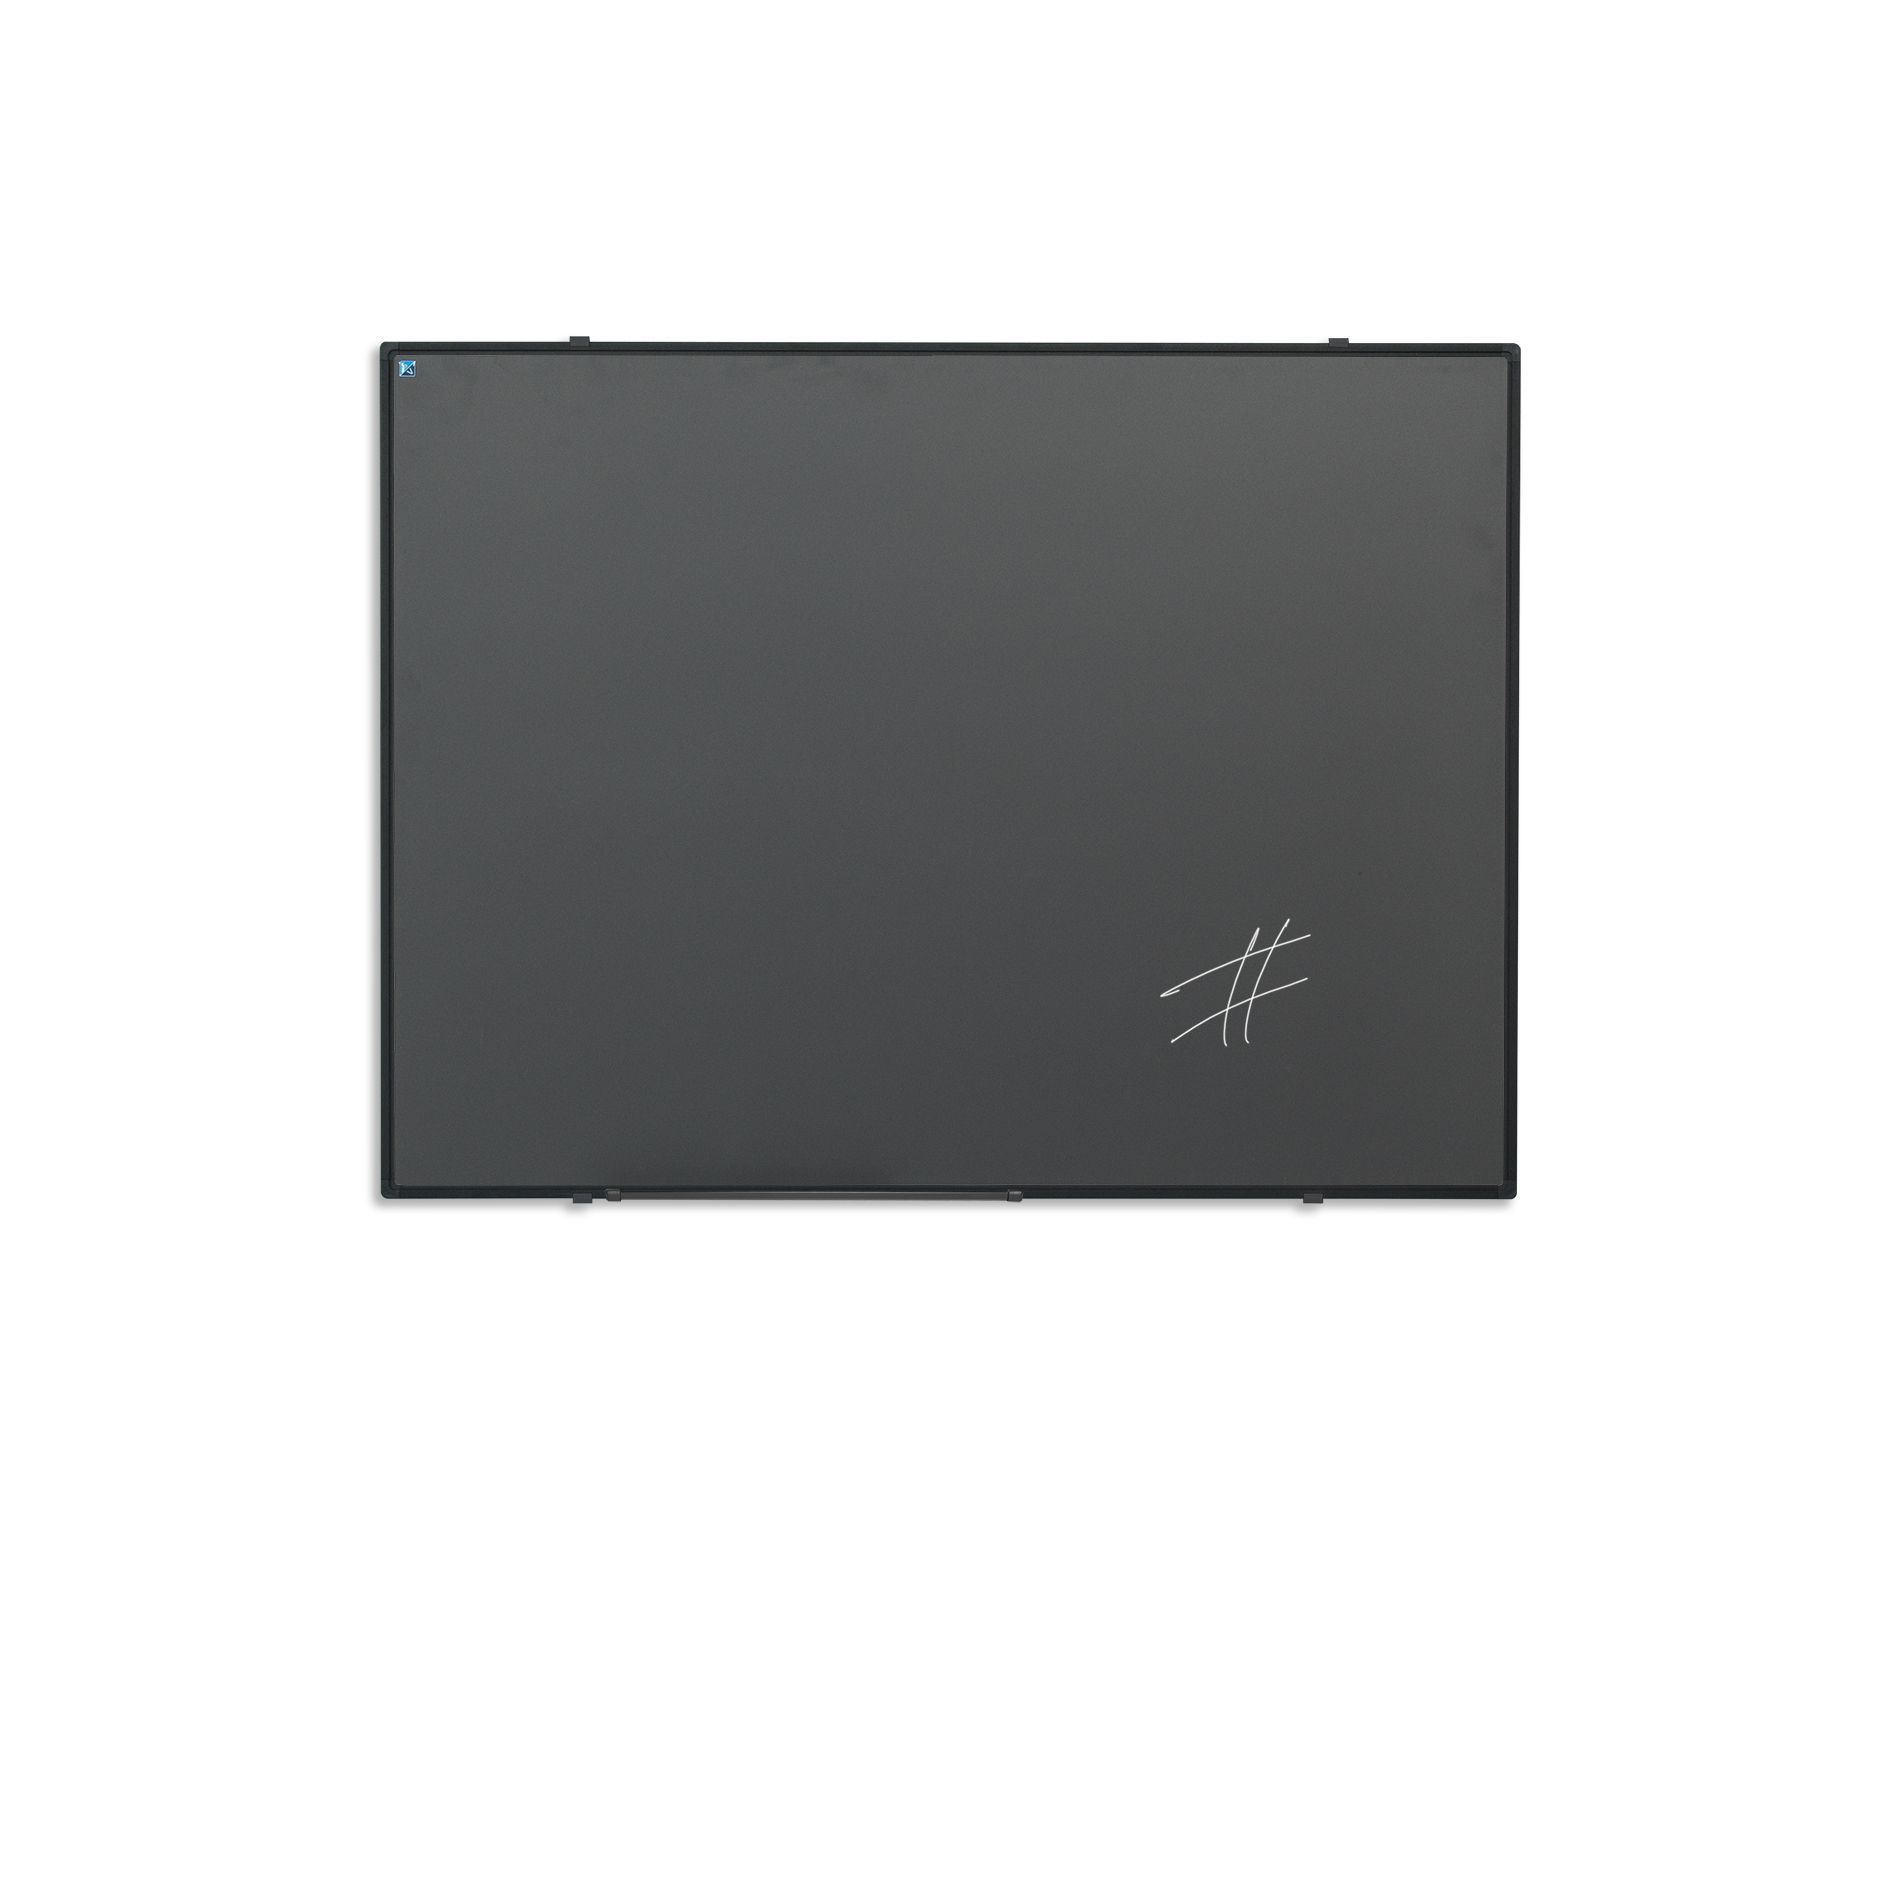 Krijtbord zwart Softline profiel 8mm, emailstaal grijs - 60x90 cm